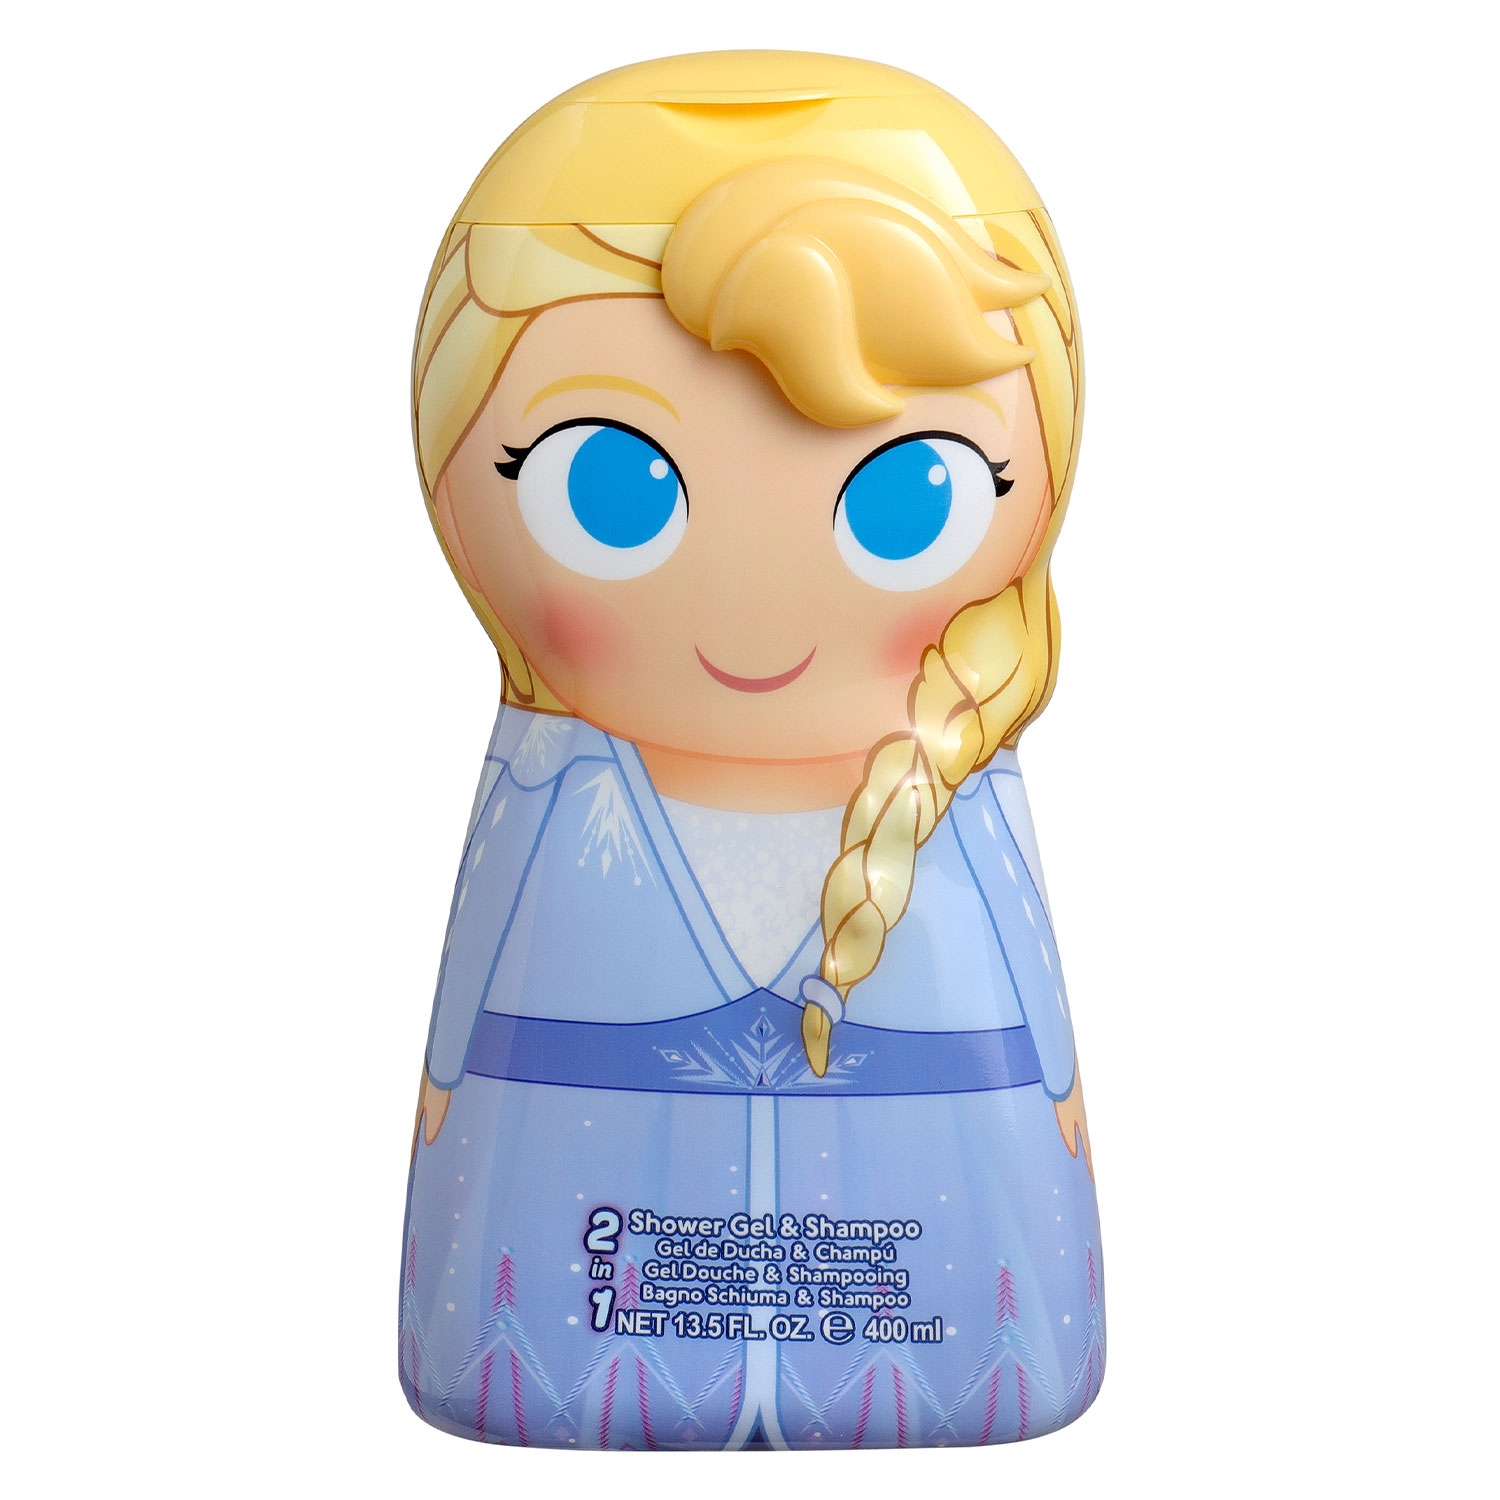 Produktbild von Kids Shower Gels - Disney Frozen Elsa Shower Gel 2in1